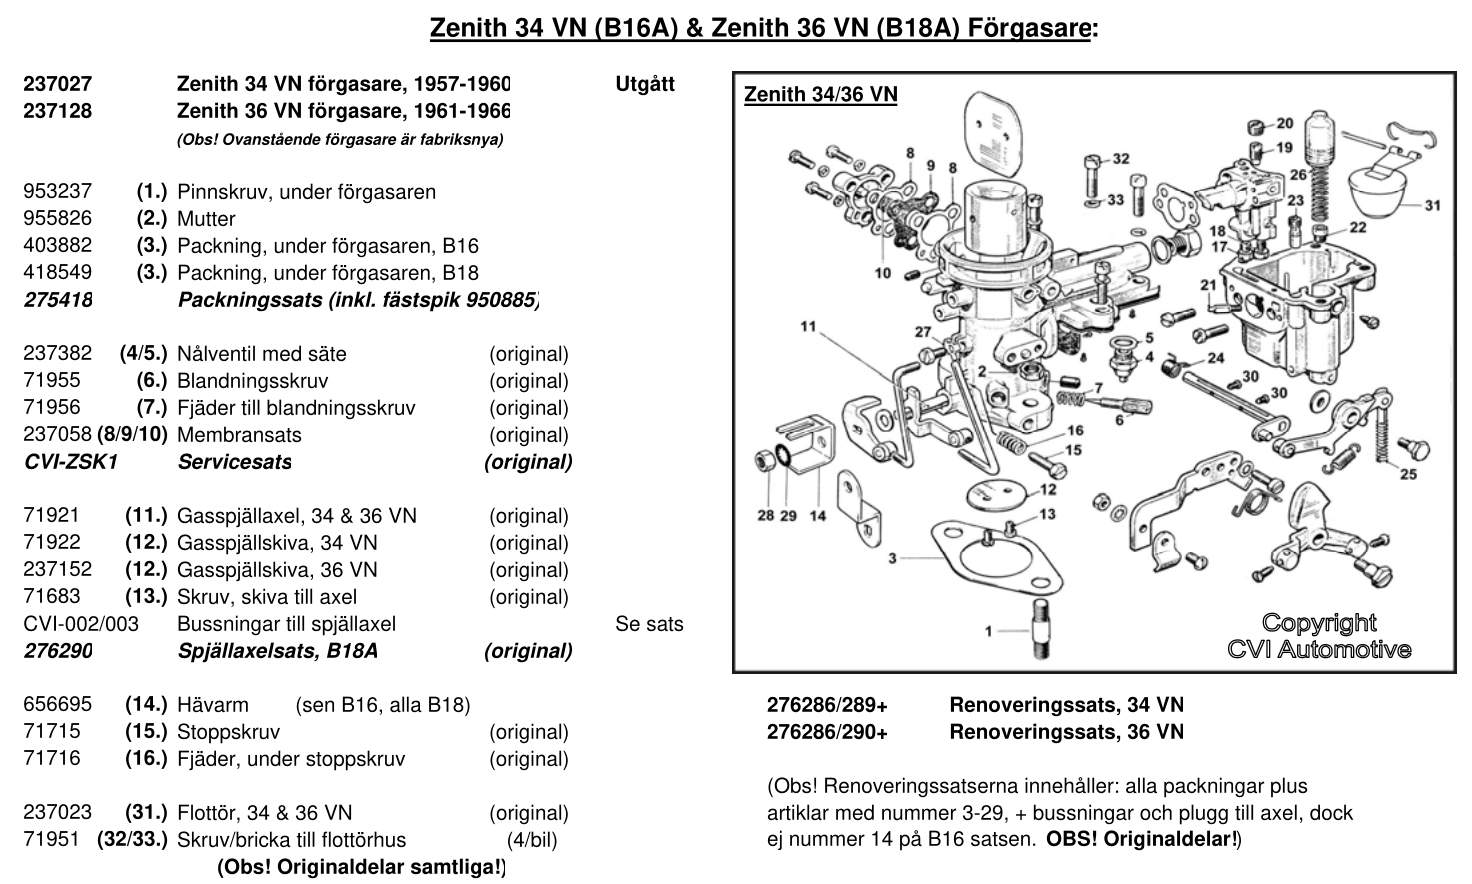 Sprängskiss - Zenith 34 & 36 VN